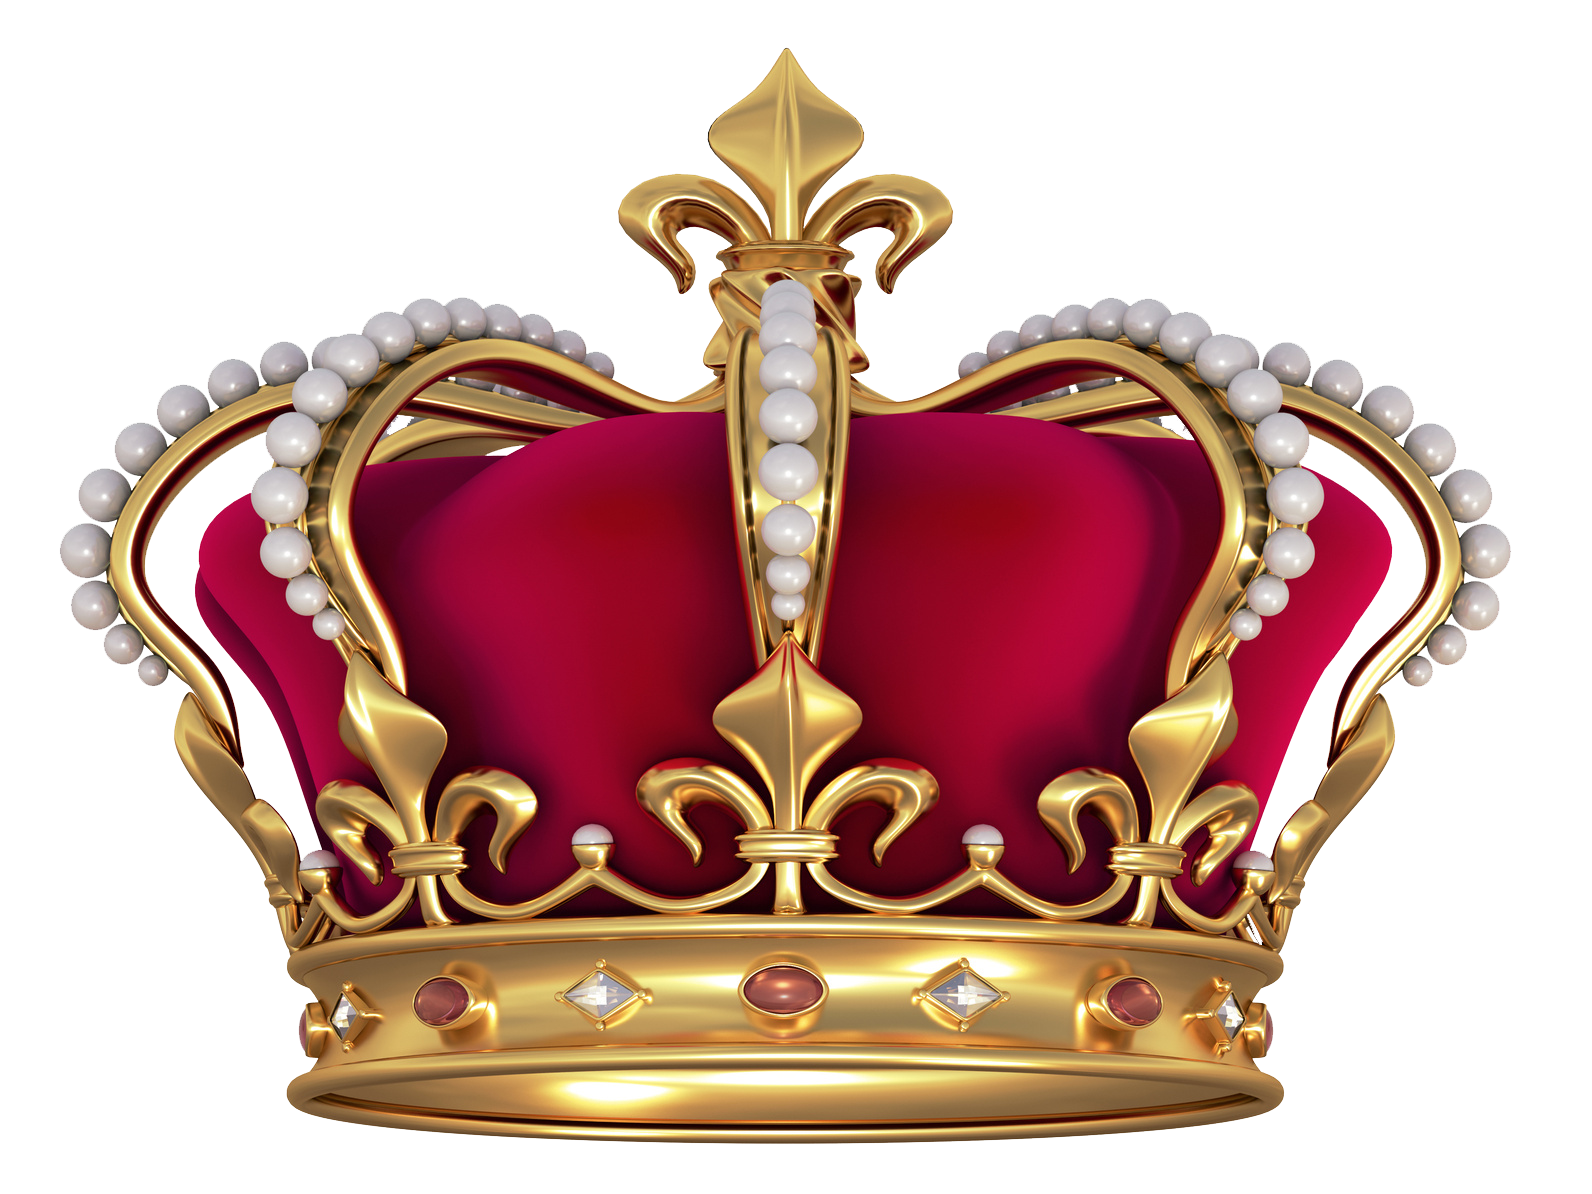 Crown clipart medieval crown, Crown medieval crown